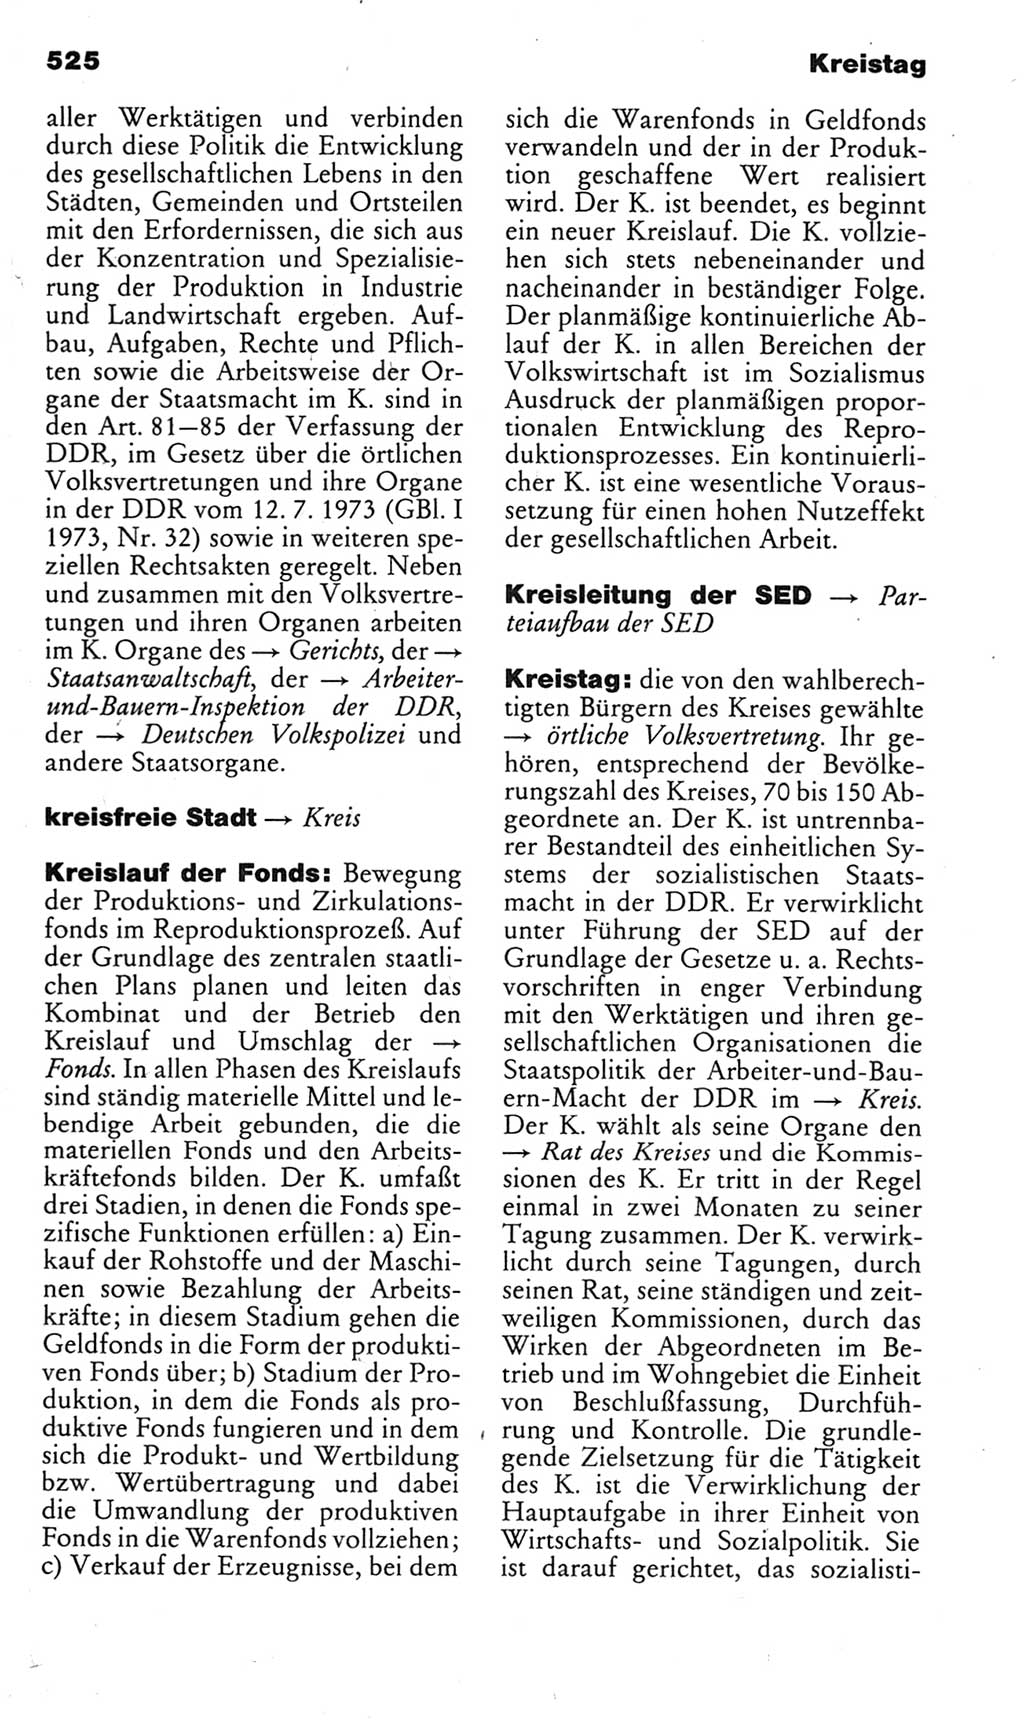 Kleines politisches Wörterbuch [Deutsche Demokratische Republik (DDR)] 1985, Seite 525 (Kl. pol. Wb. DDR 1985, S. 525)